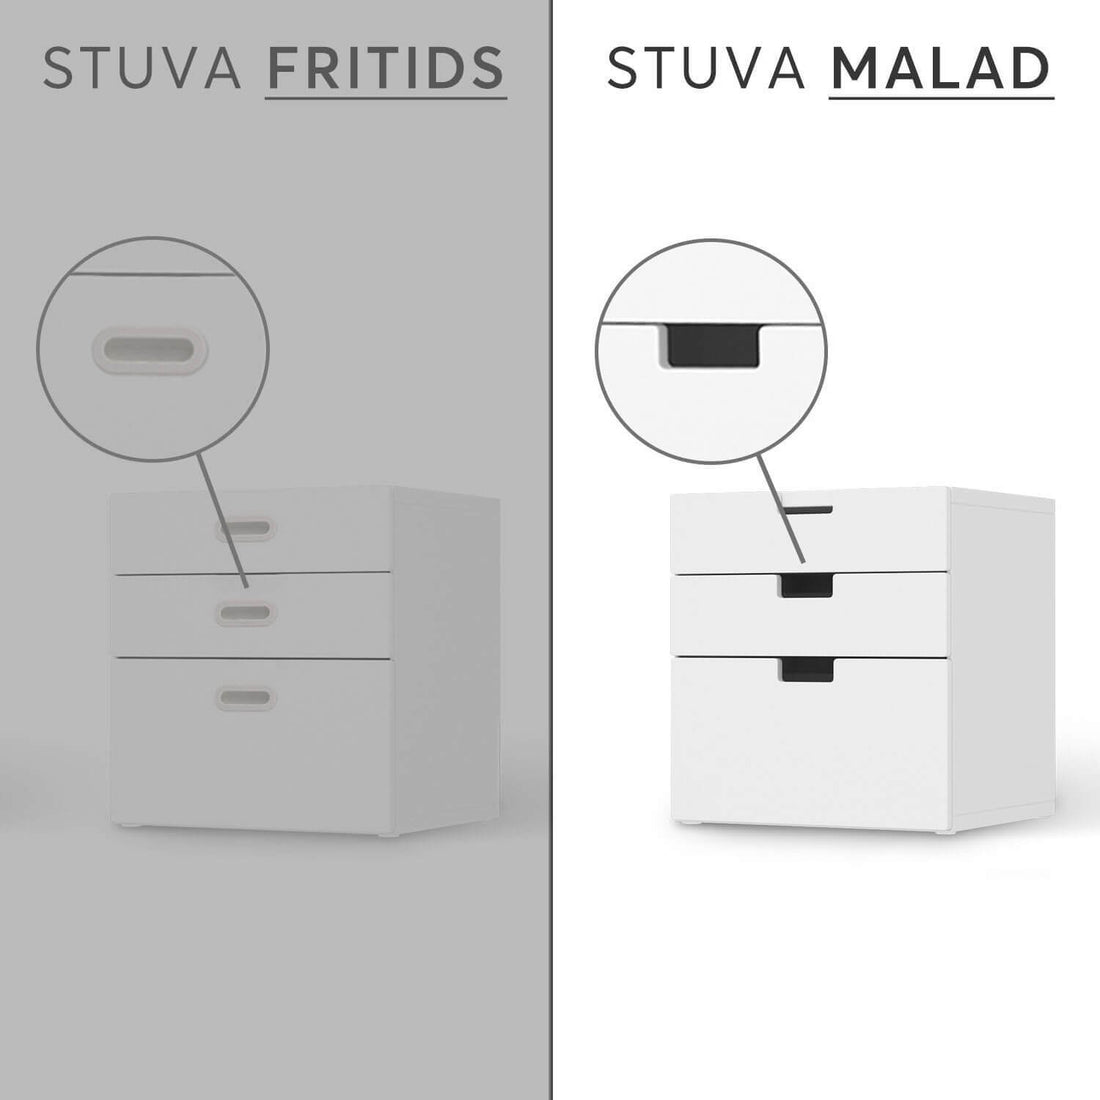 Folie für Möbel IKEA Stuva / Malad Kommode - 3 Schubladen - Design: Space Traveller